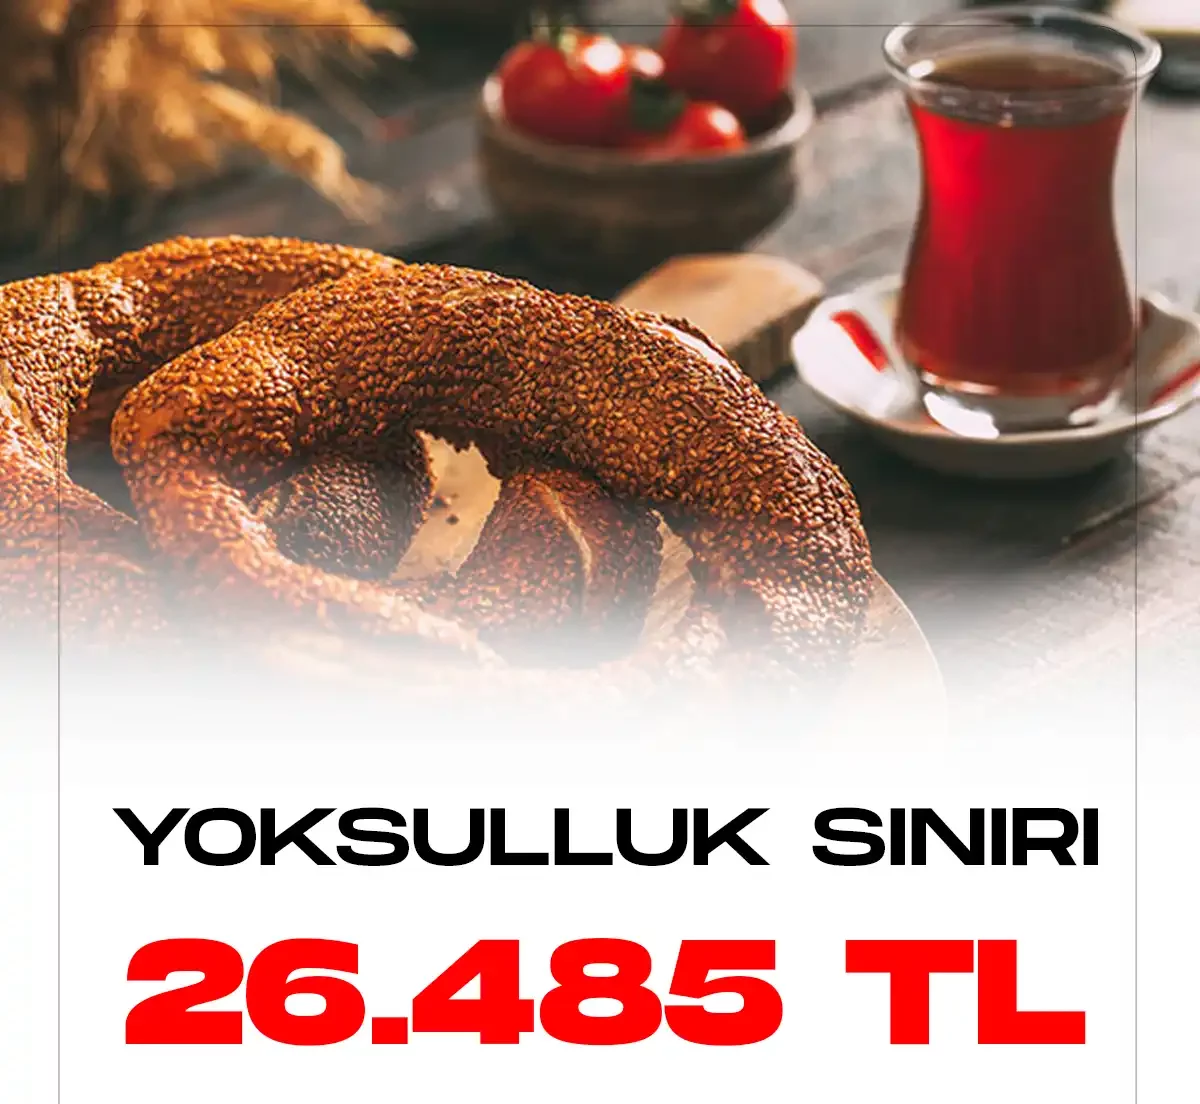 Türk İş yoksulluk sınırını 26 bin 485 TL olarak açıkaldı.